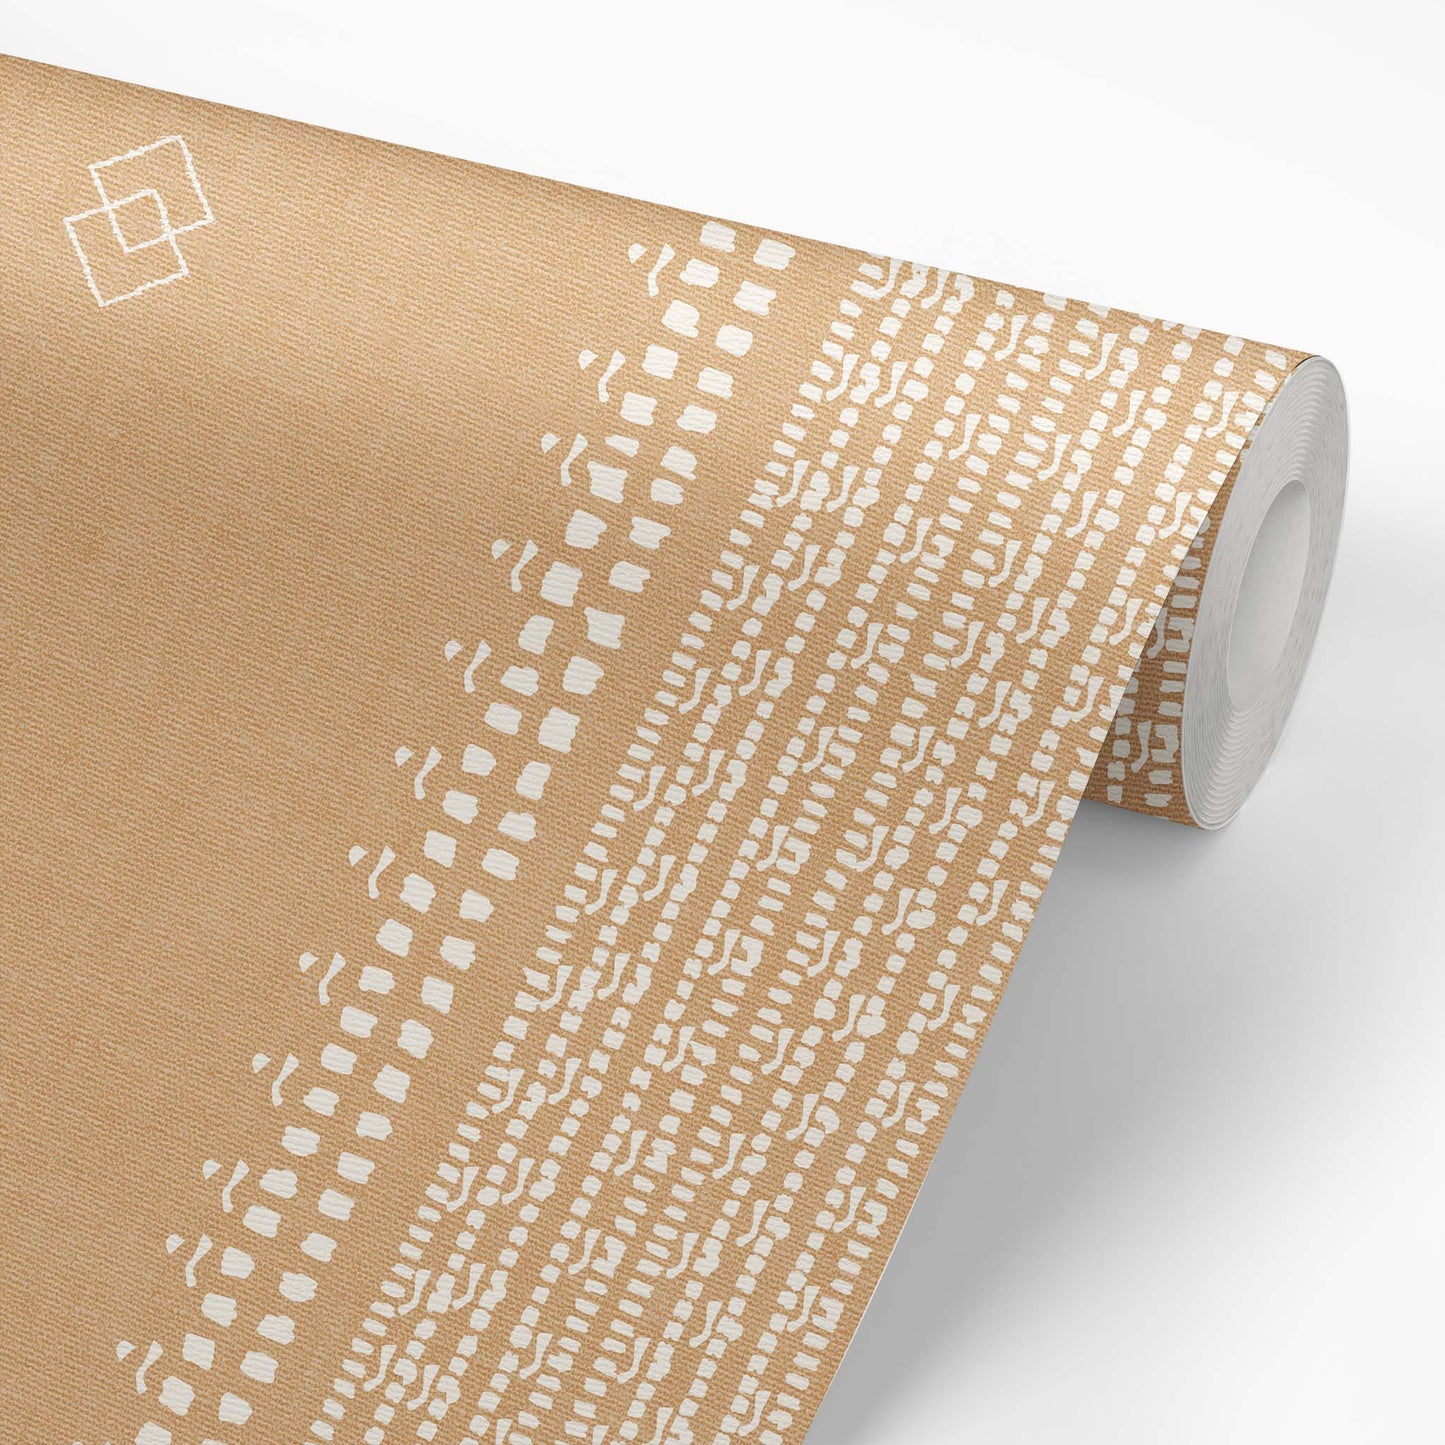 French Linen Stripes Wallpaper - Cream on Caramel